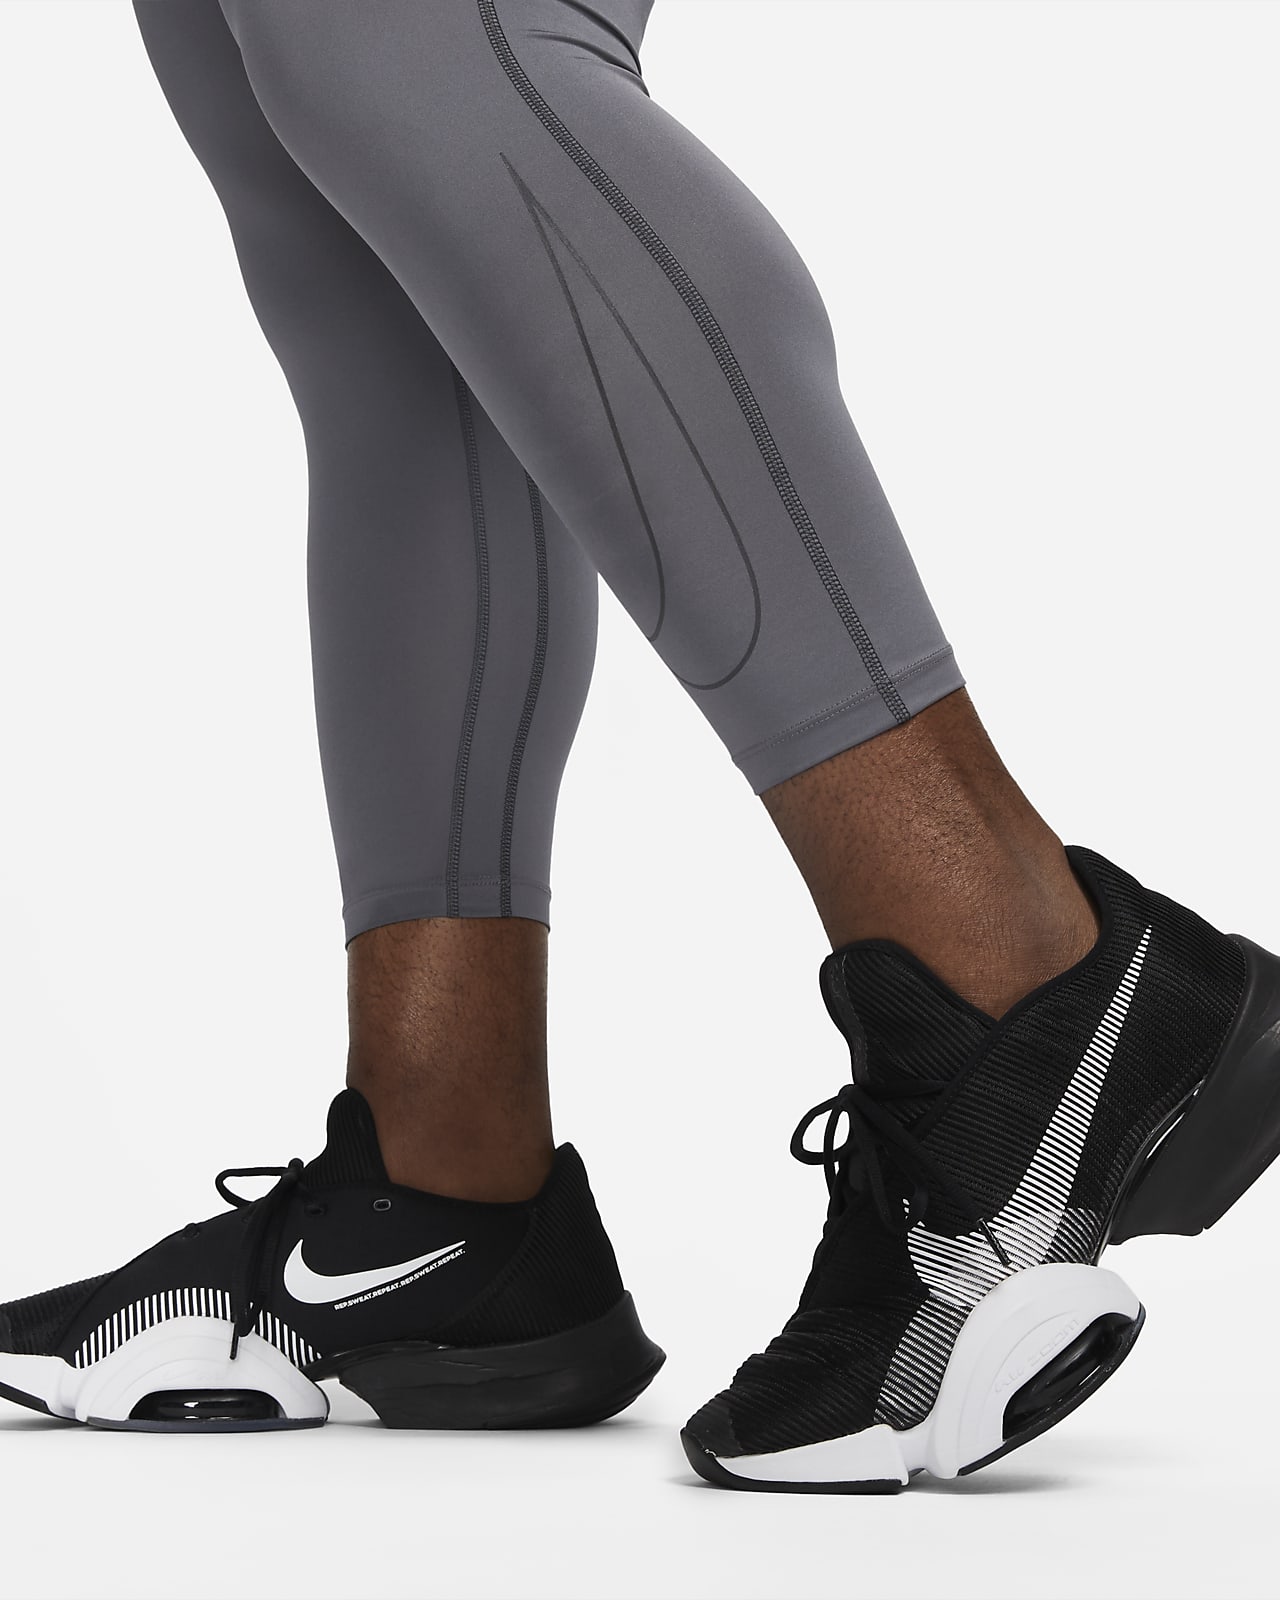 Santuario obtener Inspeccionar Nike Pro Dri-FIT Men's 3/4 Tights. Nike GB